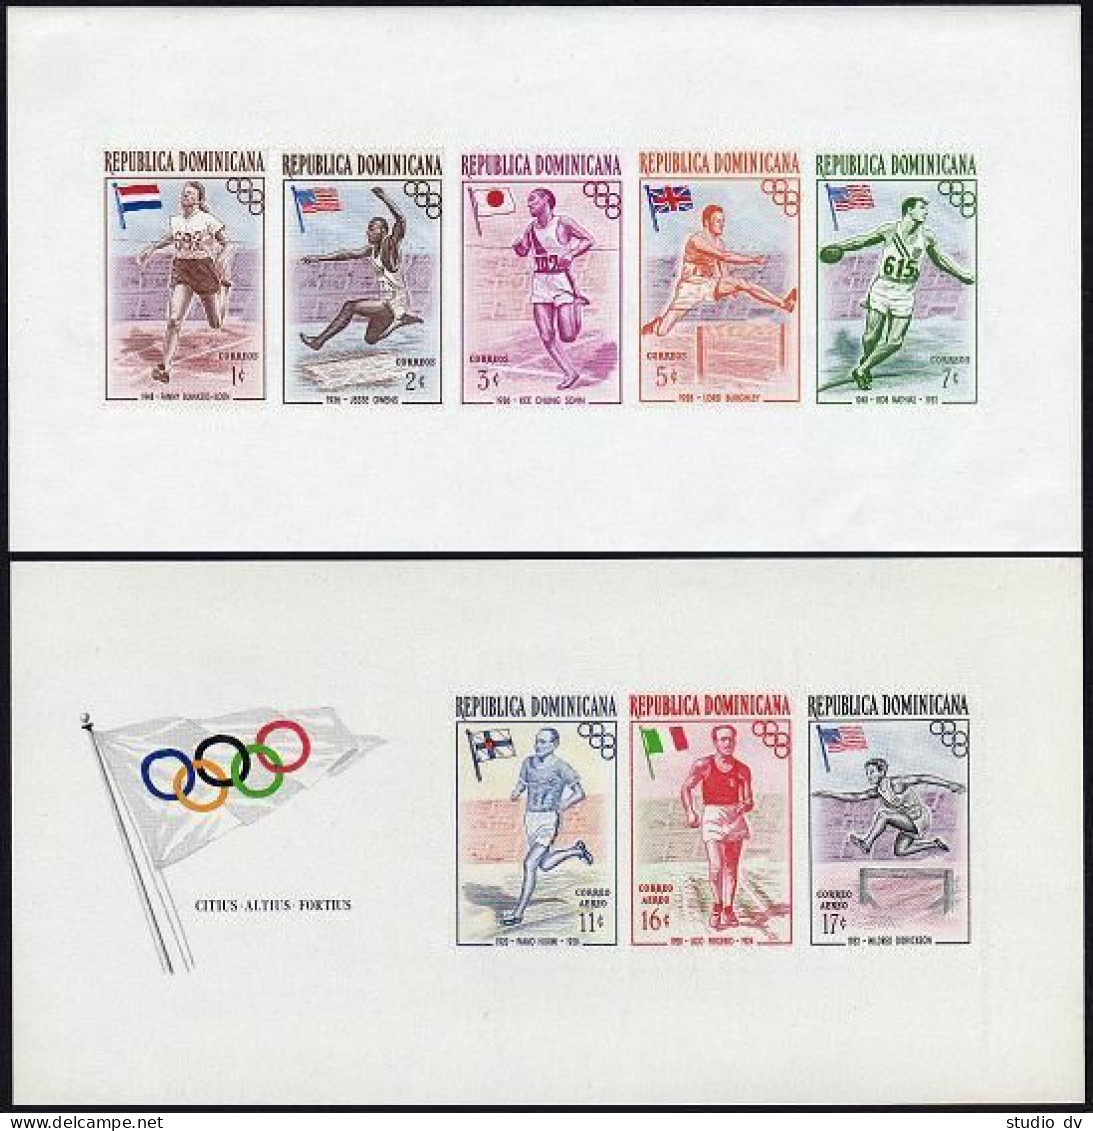 Dominican Rep 478a,C99a A,B,mint.Mi Bl.3A-4A,3B-4B. Olympics Melbourne-1956. - Dominican Republic